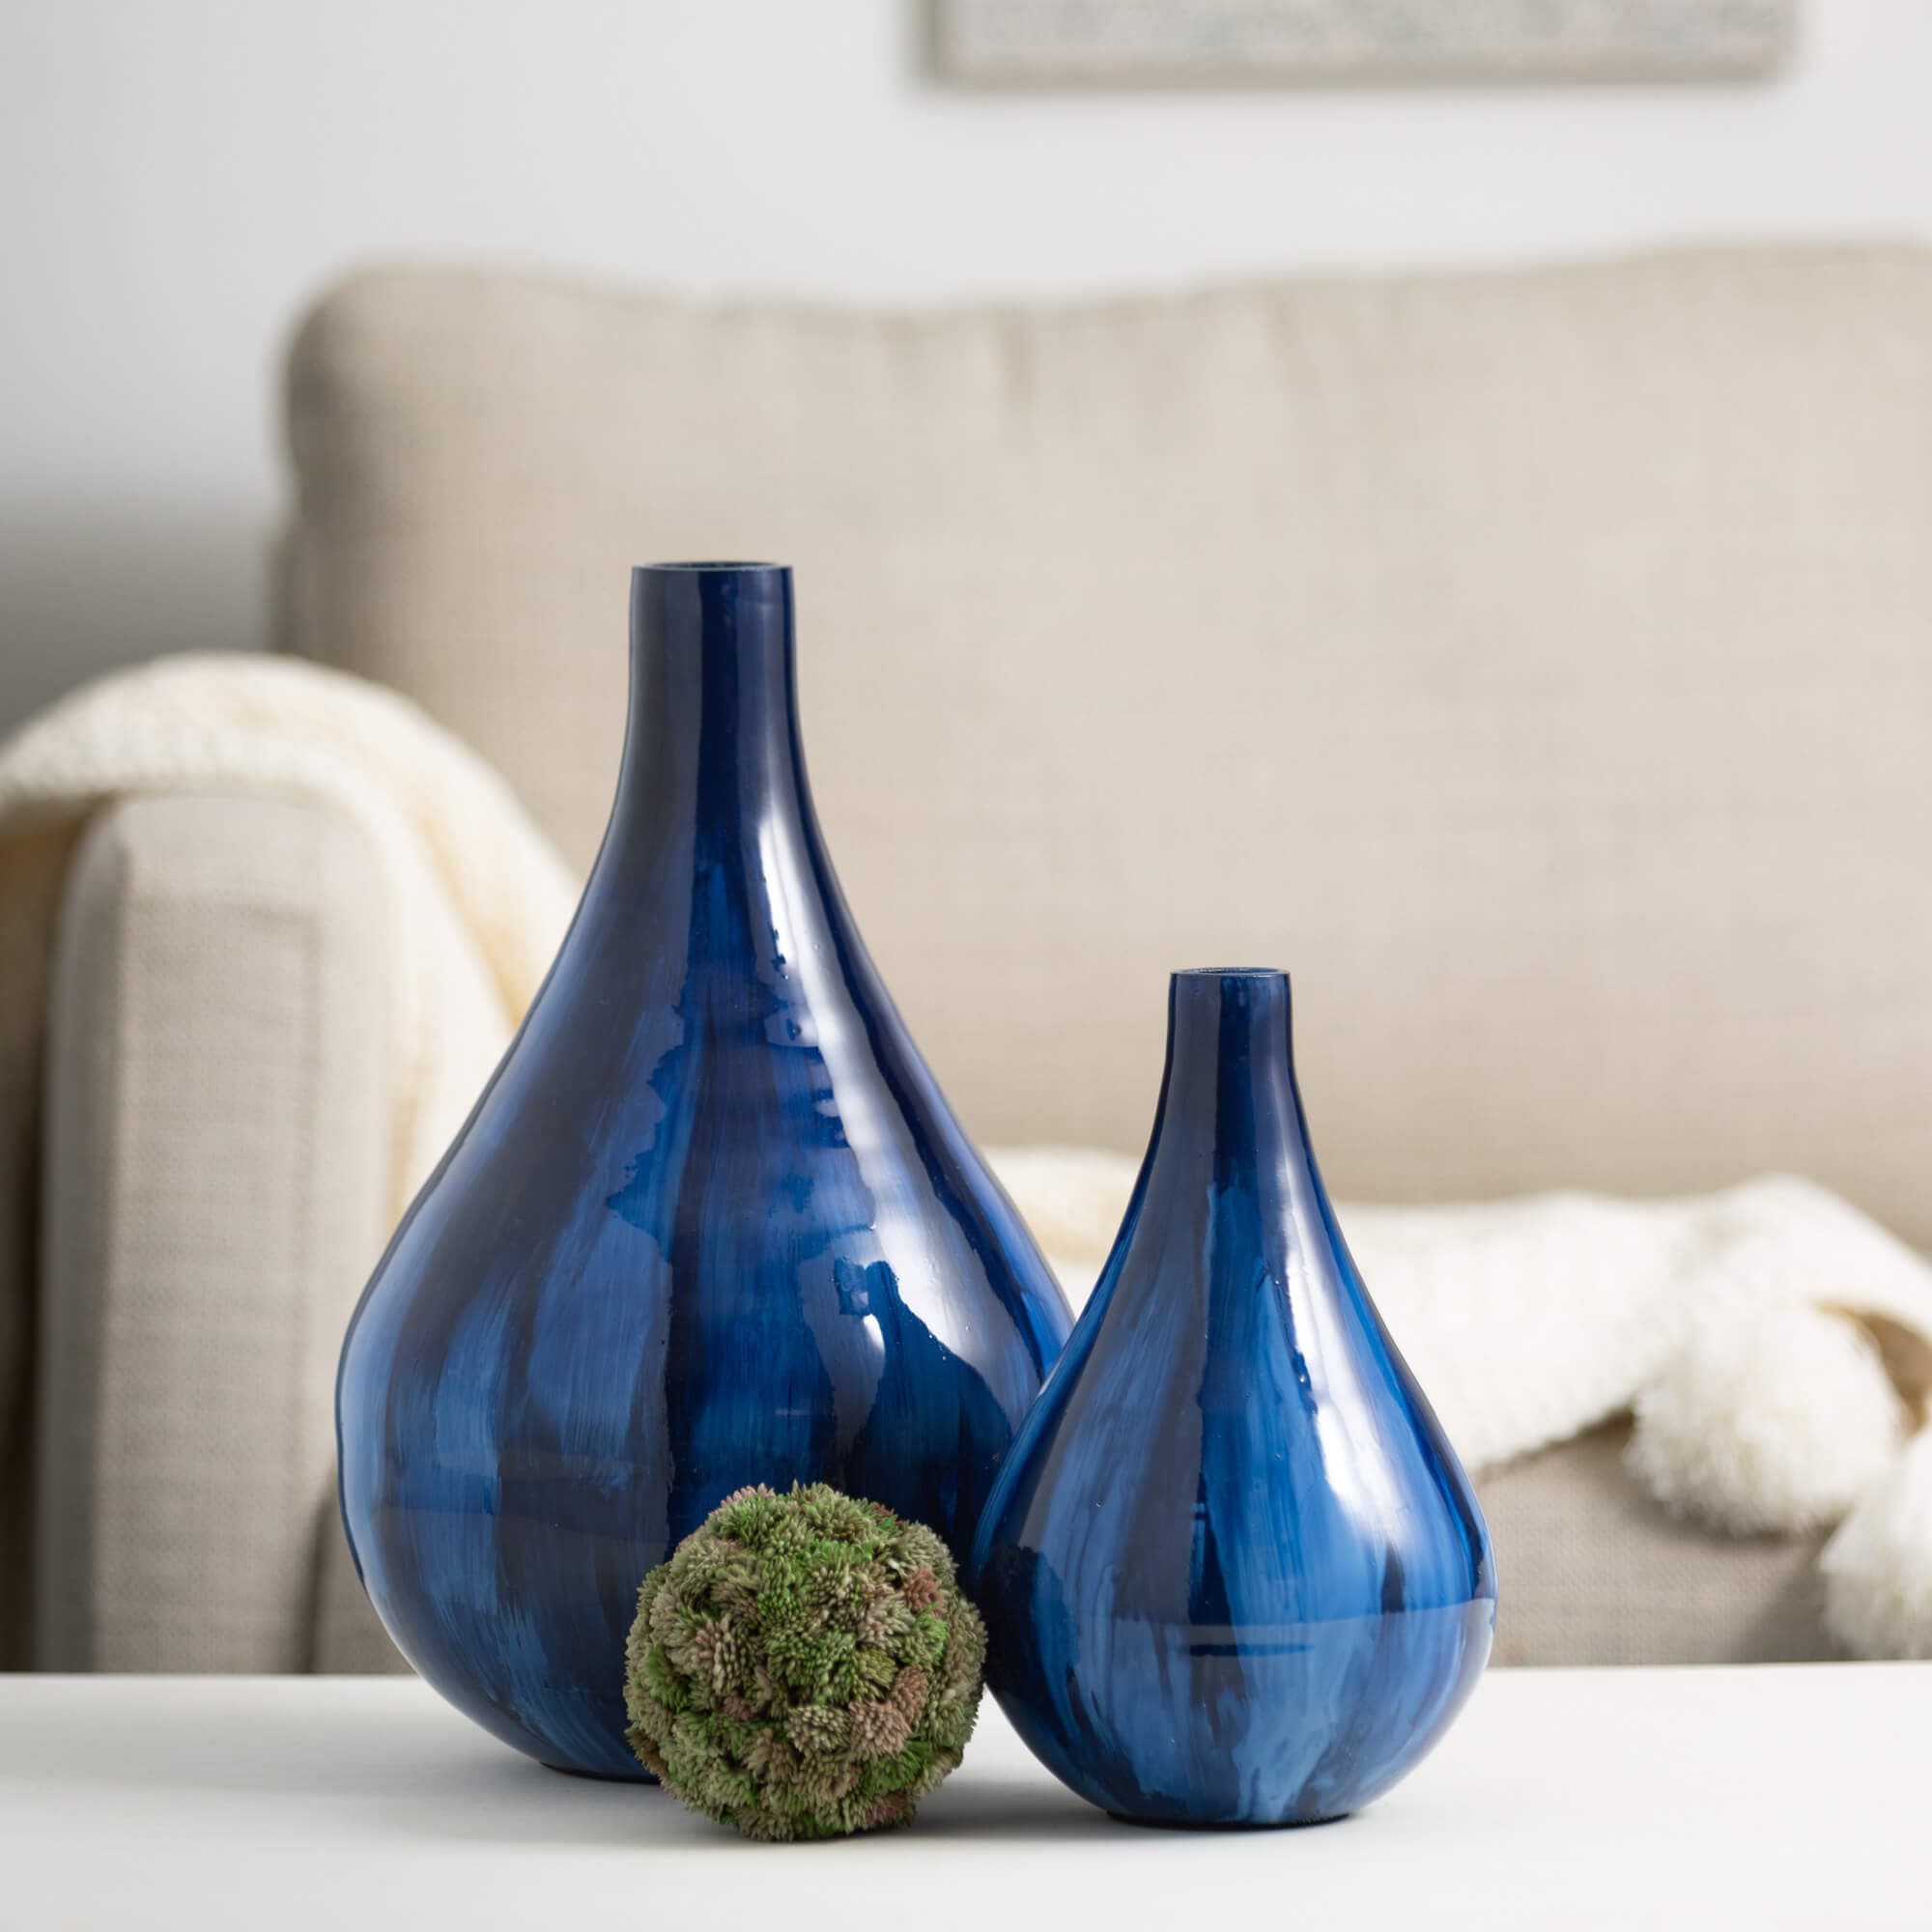 Handmade Cobalt Blue Glass Vases Elevate Home Decor - Vases